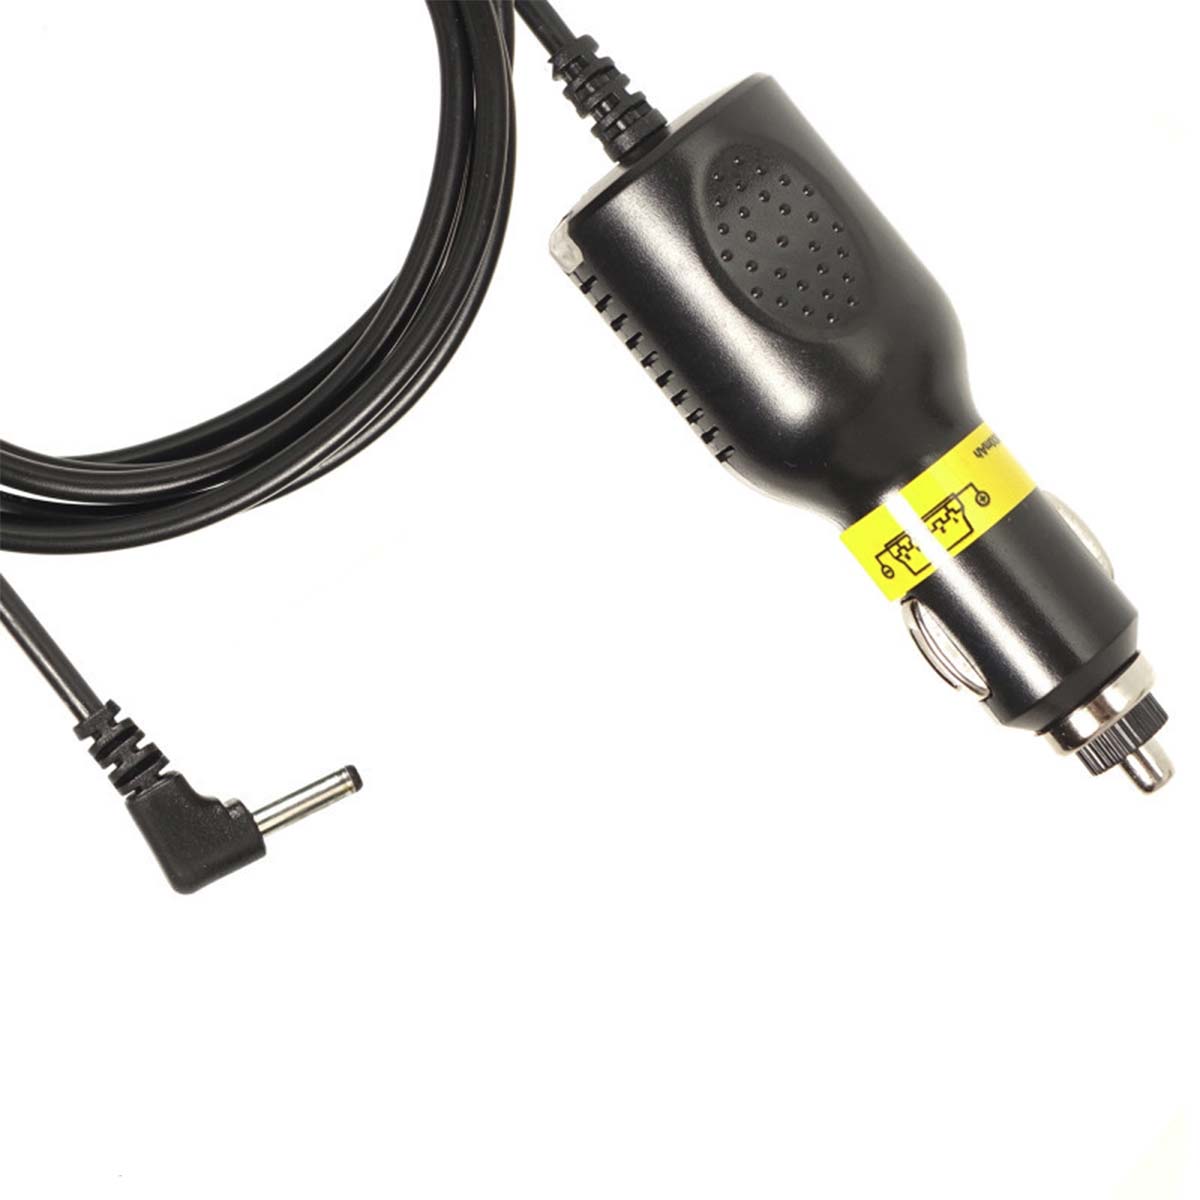 АЗУ (Автомобильное зарядное устройство) LP5 35 на видеорегистратор (3.5*1.35), стандарт 5V-2A 1.5 м, цвет черный